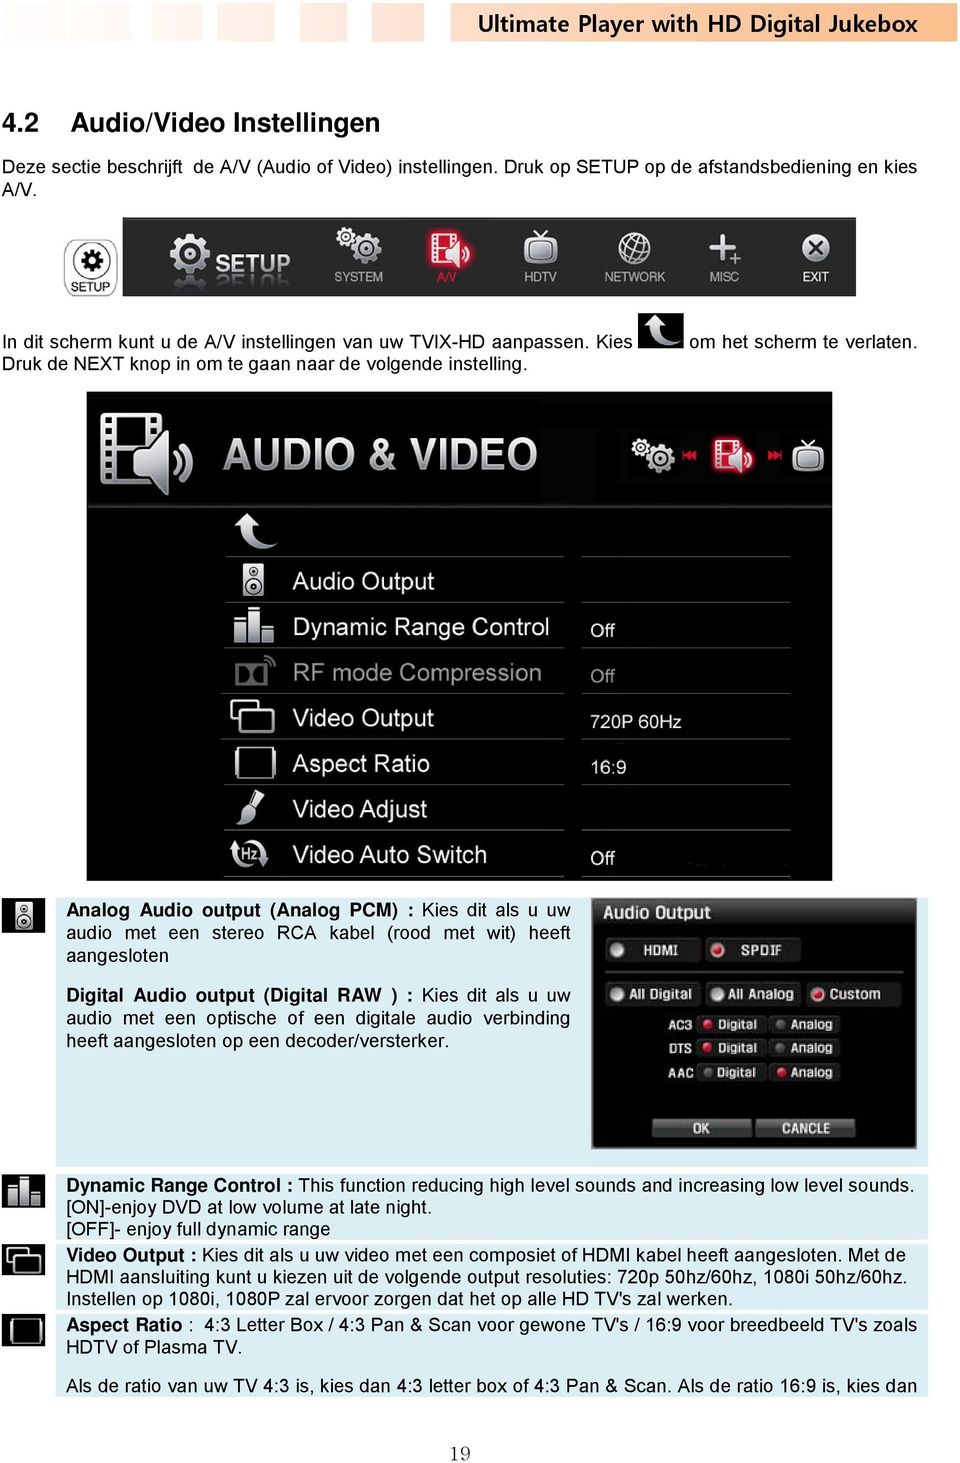 Analog Audio output (Analog PCM) : Kies dit als u uw audio met een stereo RCA kabel (rood met wit) heeft aangesloten Digital Audio output (Digital RAW ) : Kies dit als u uw audio met een optische of